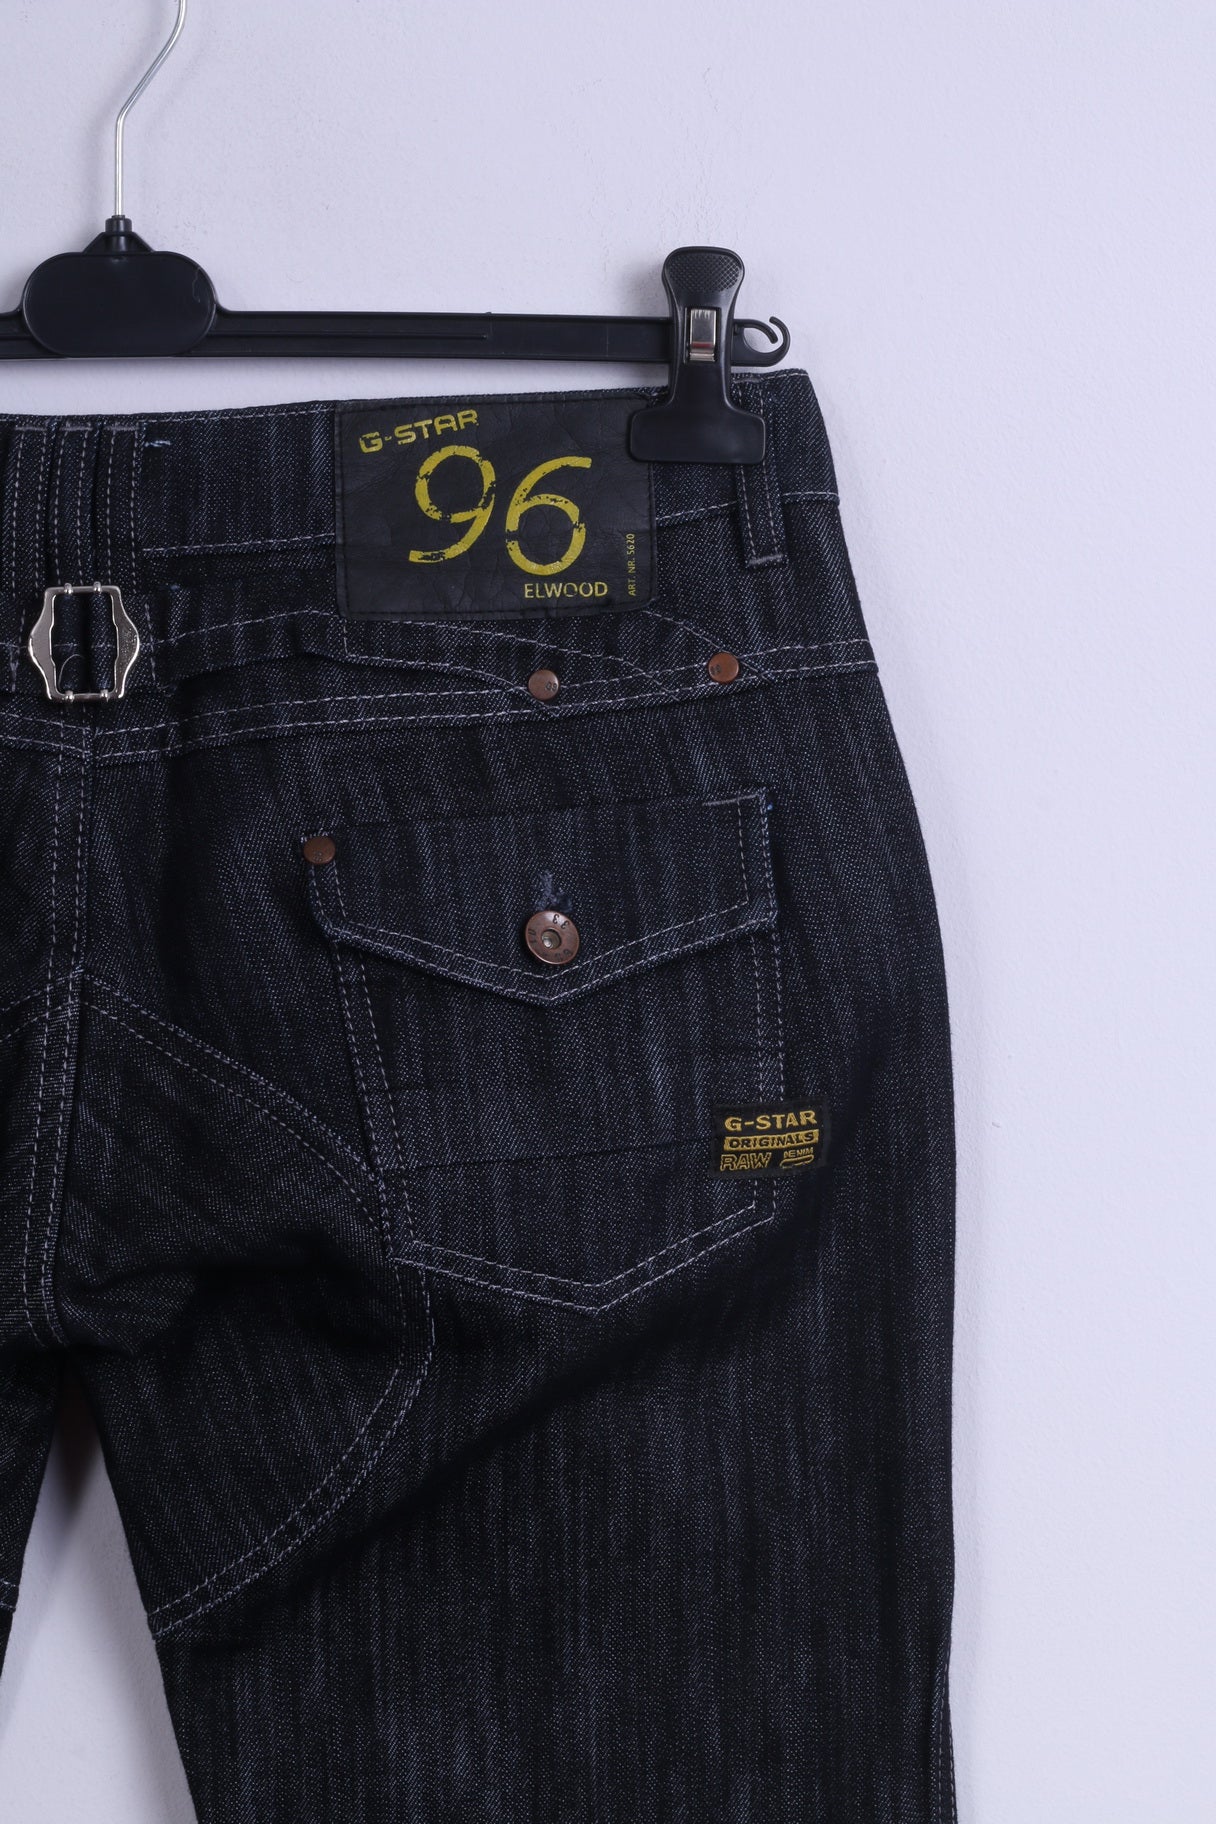 Pantaloni jeans G-STAR RAW da donna W33 L34 Pantaloni Elwood 5620 blu scuro